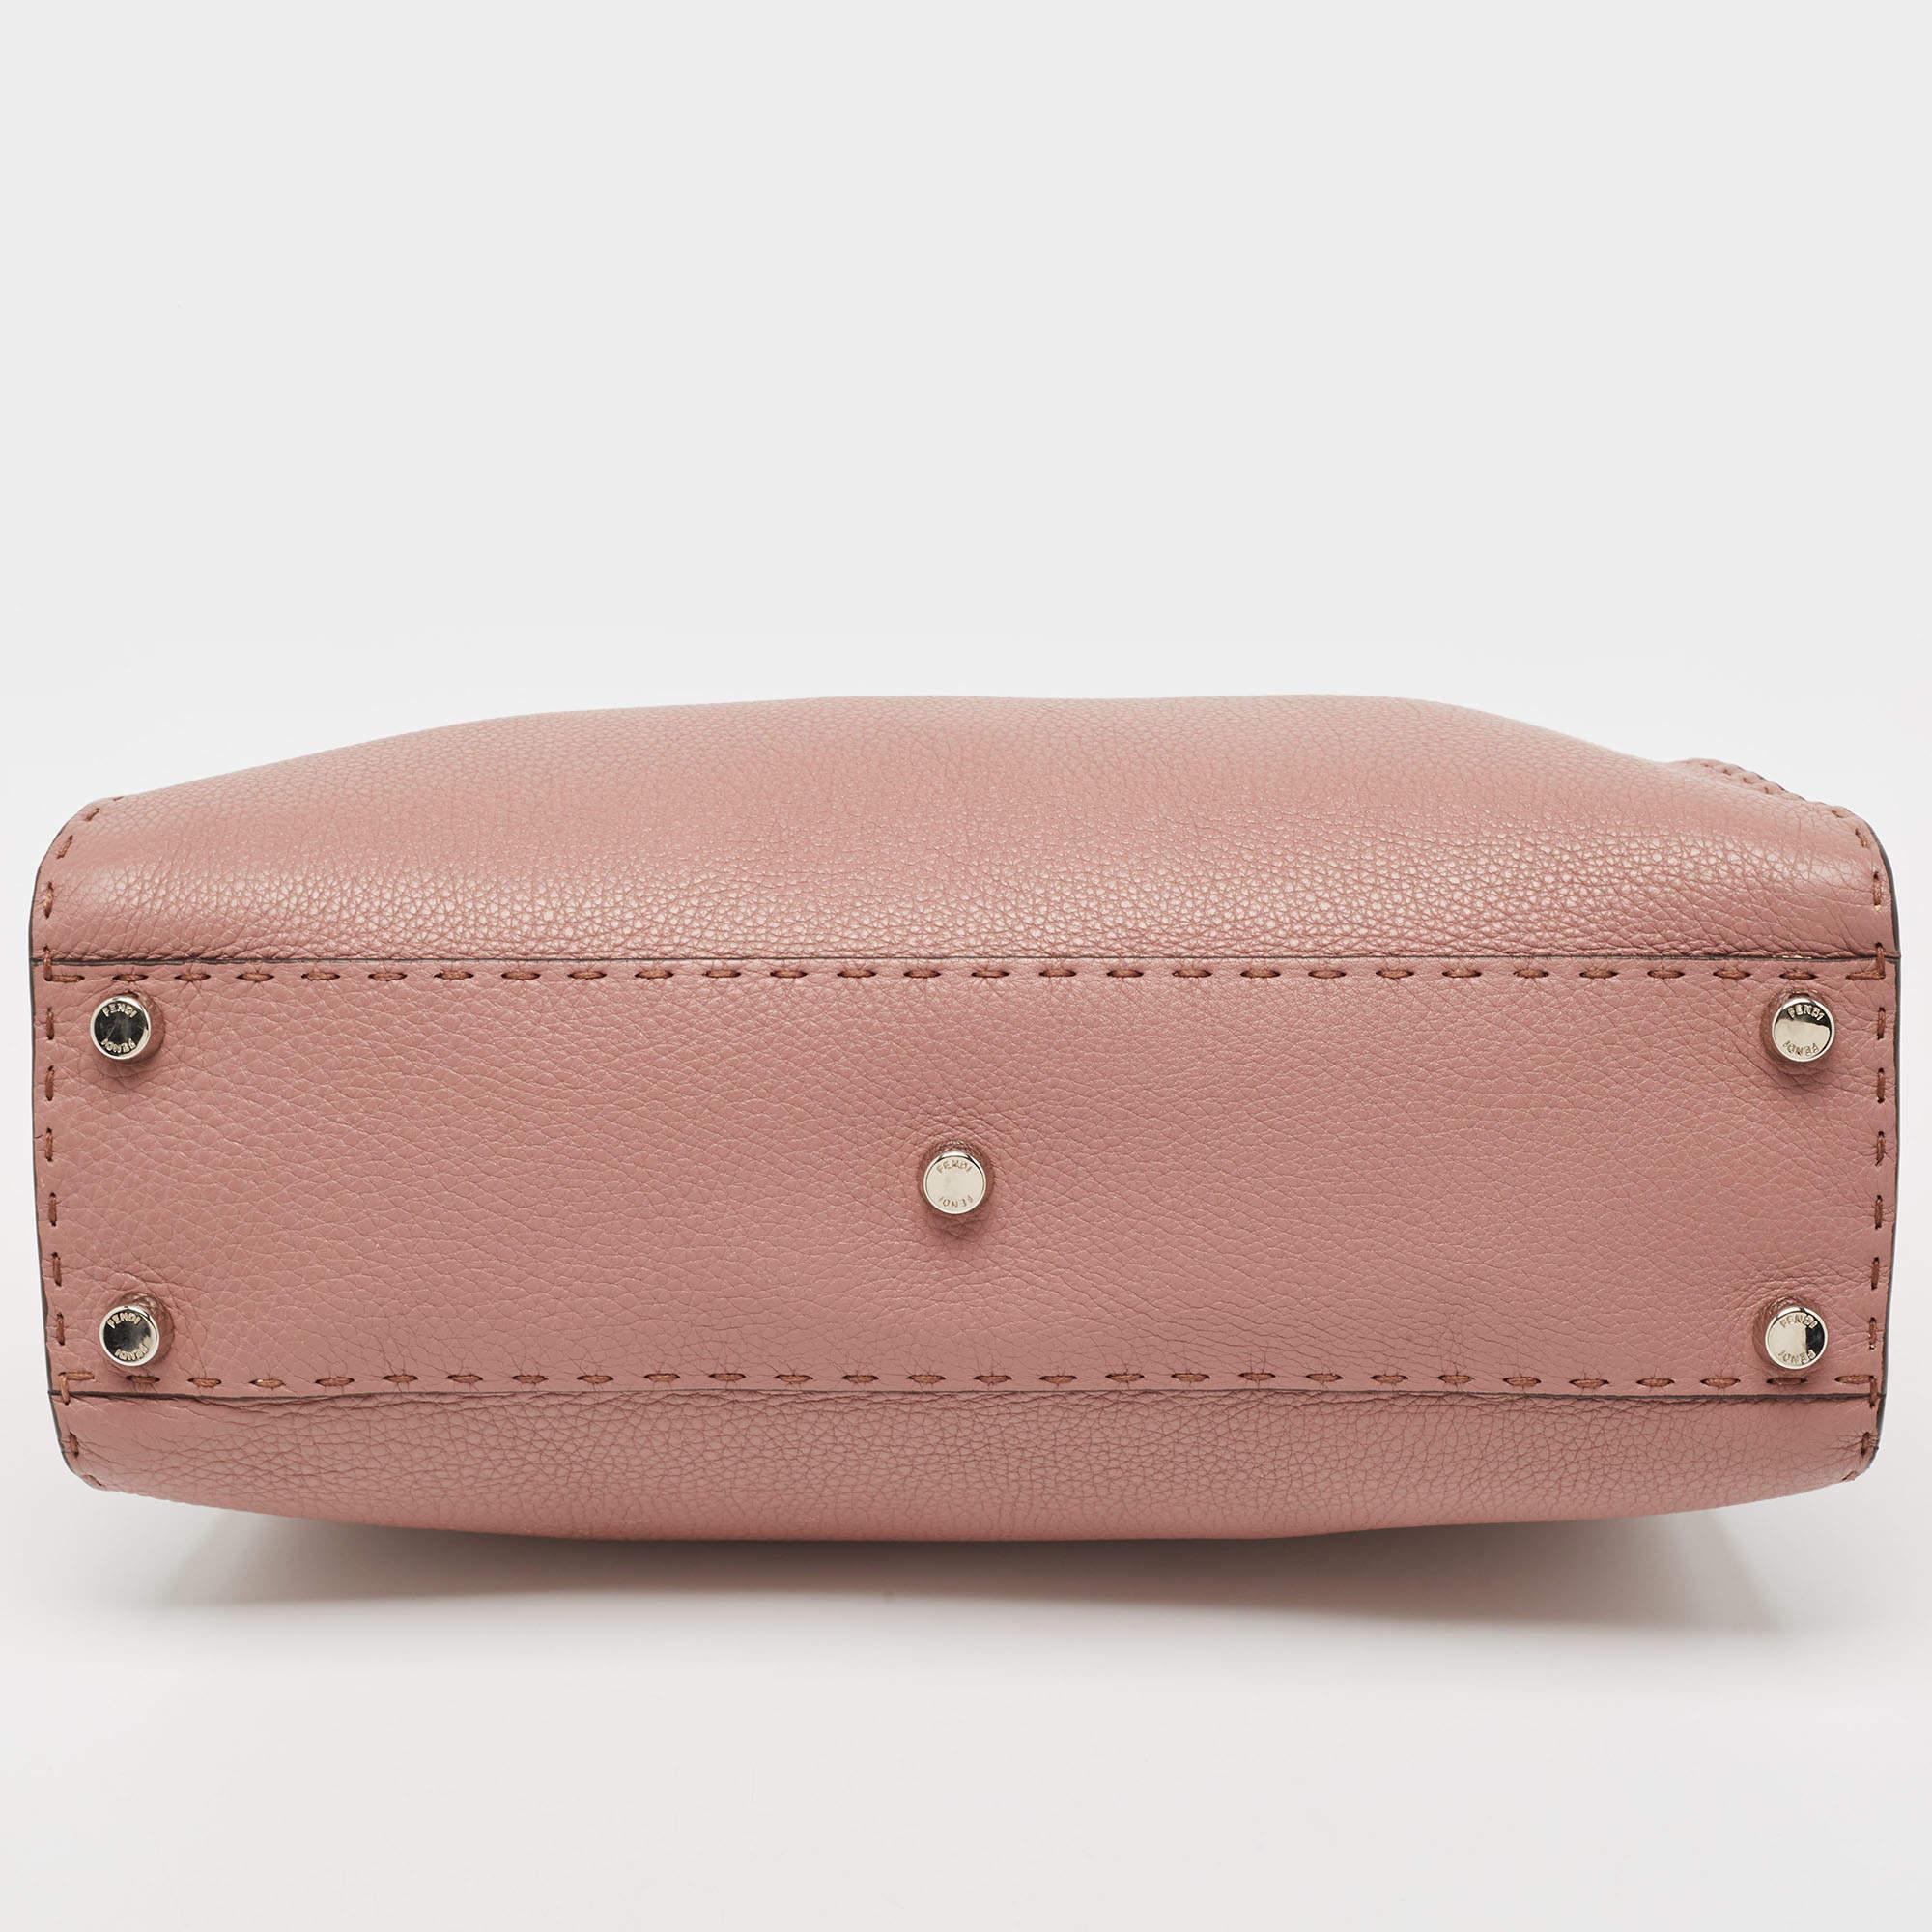 Fendi Old Rose Leather Medium Peekaboo Top Handle Bag 1